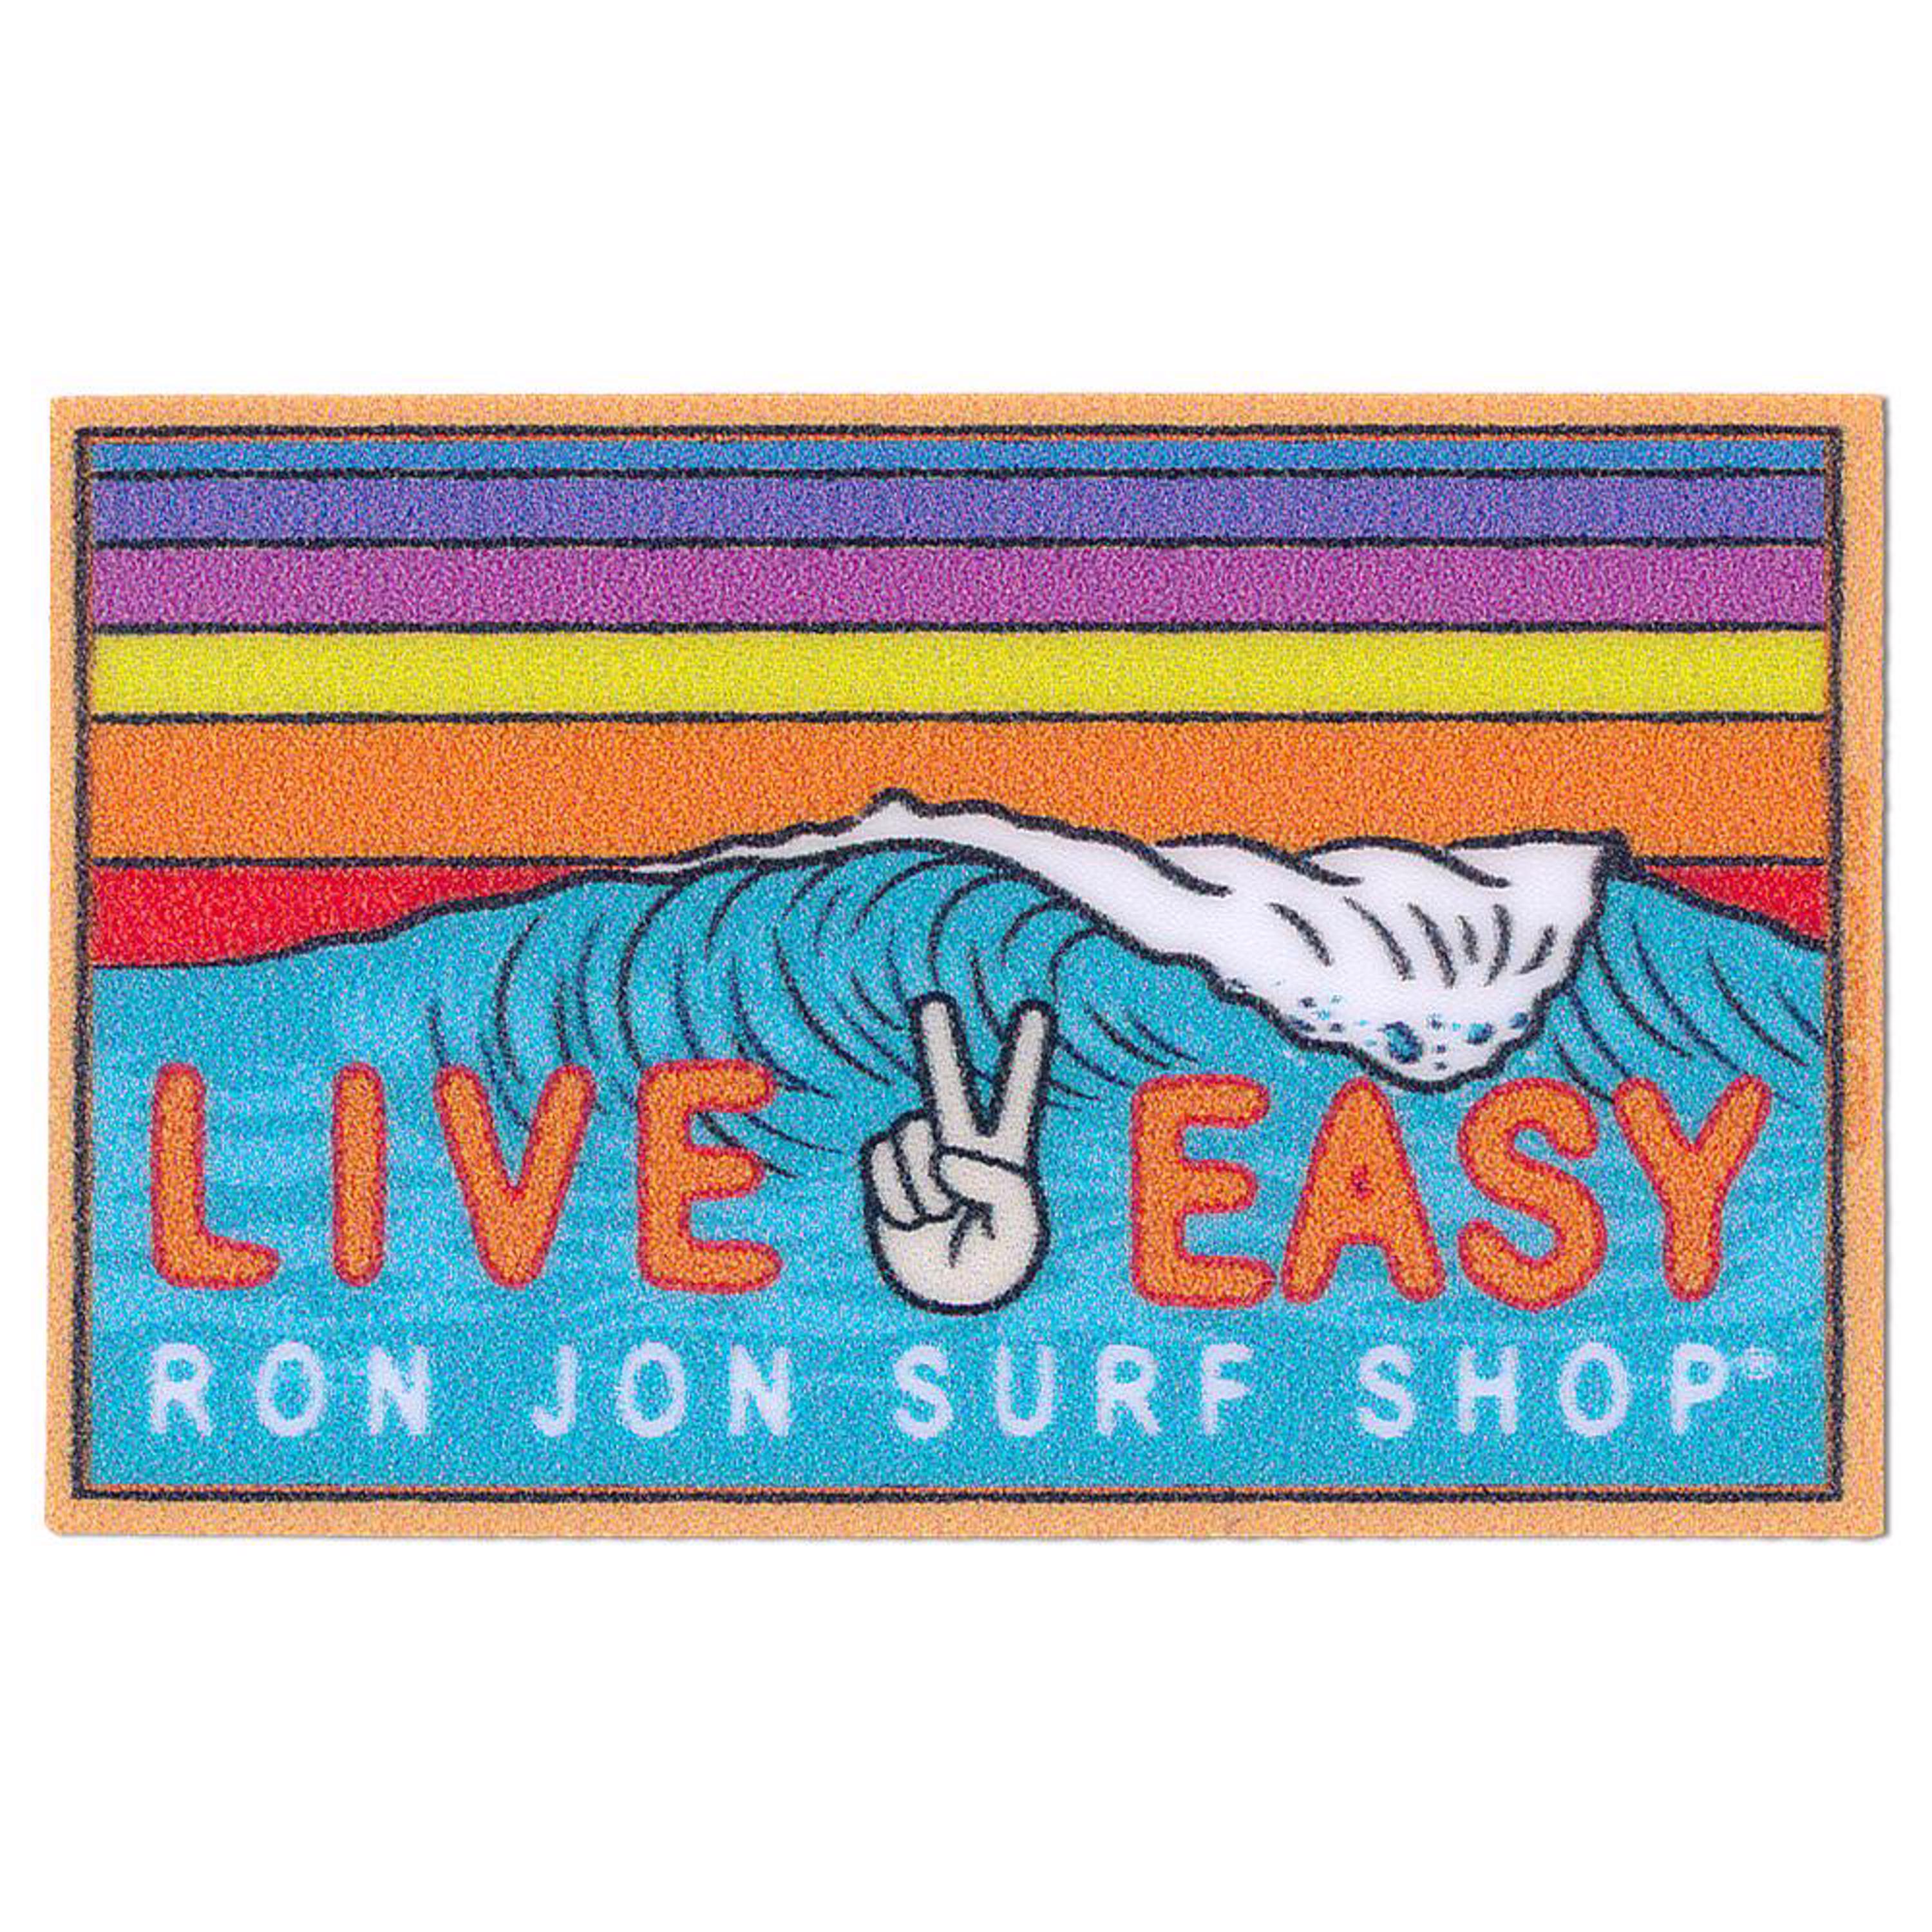 Ron Jon Mini Yeti Surf Sticker